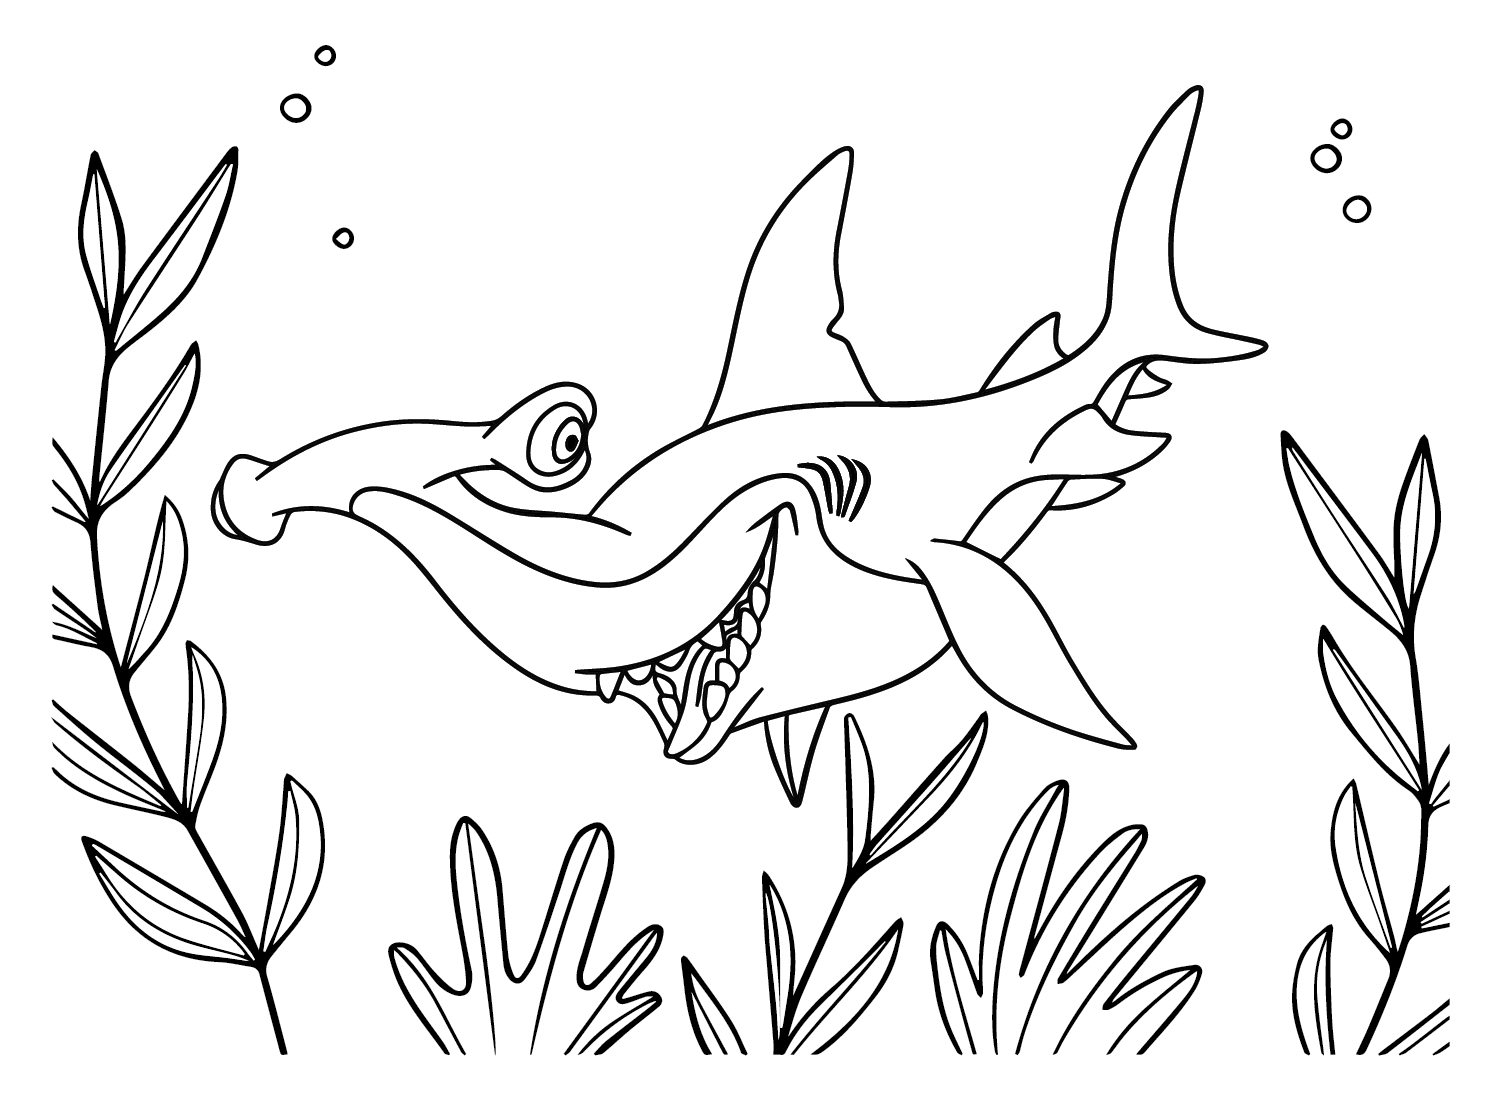 Requin marteau de la famille des poissons de requin marteau